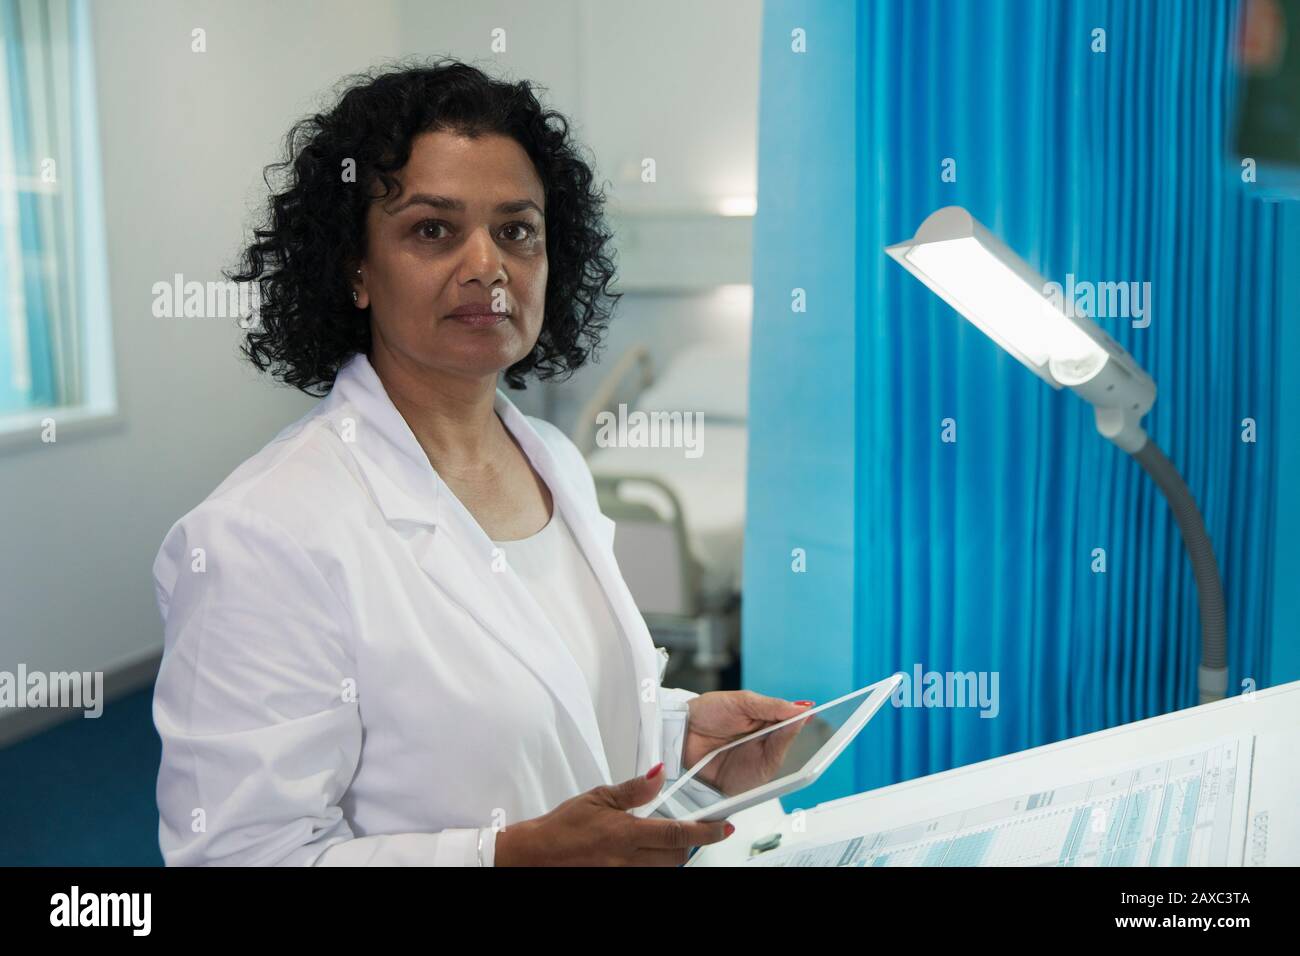 Portrait confiant, déterminé médecin de femme utilisant la tablette numérique dans la salle d'hôpital Banque D'Images